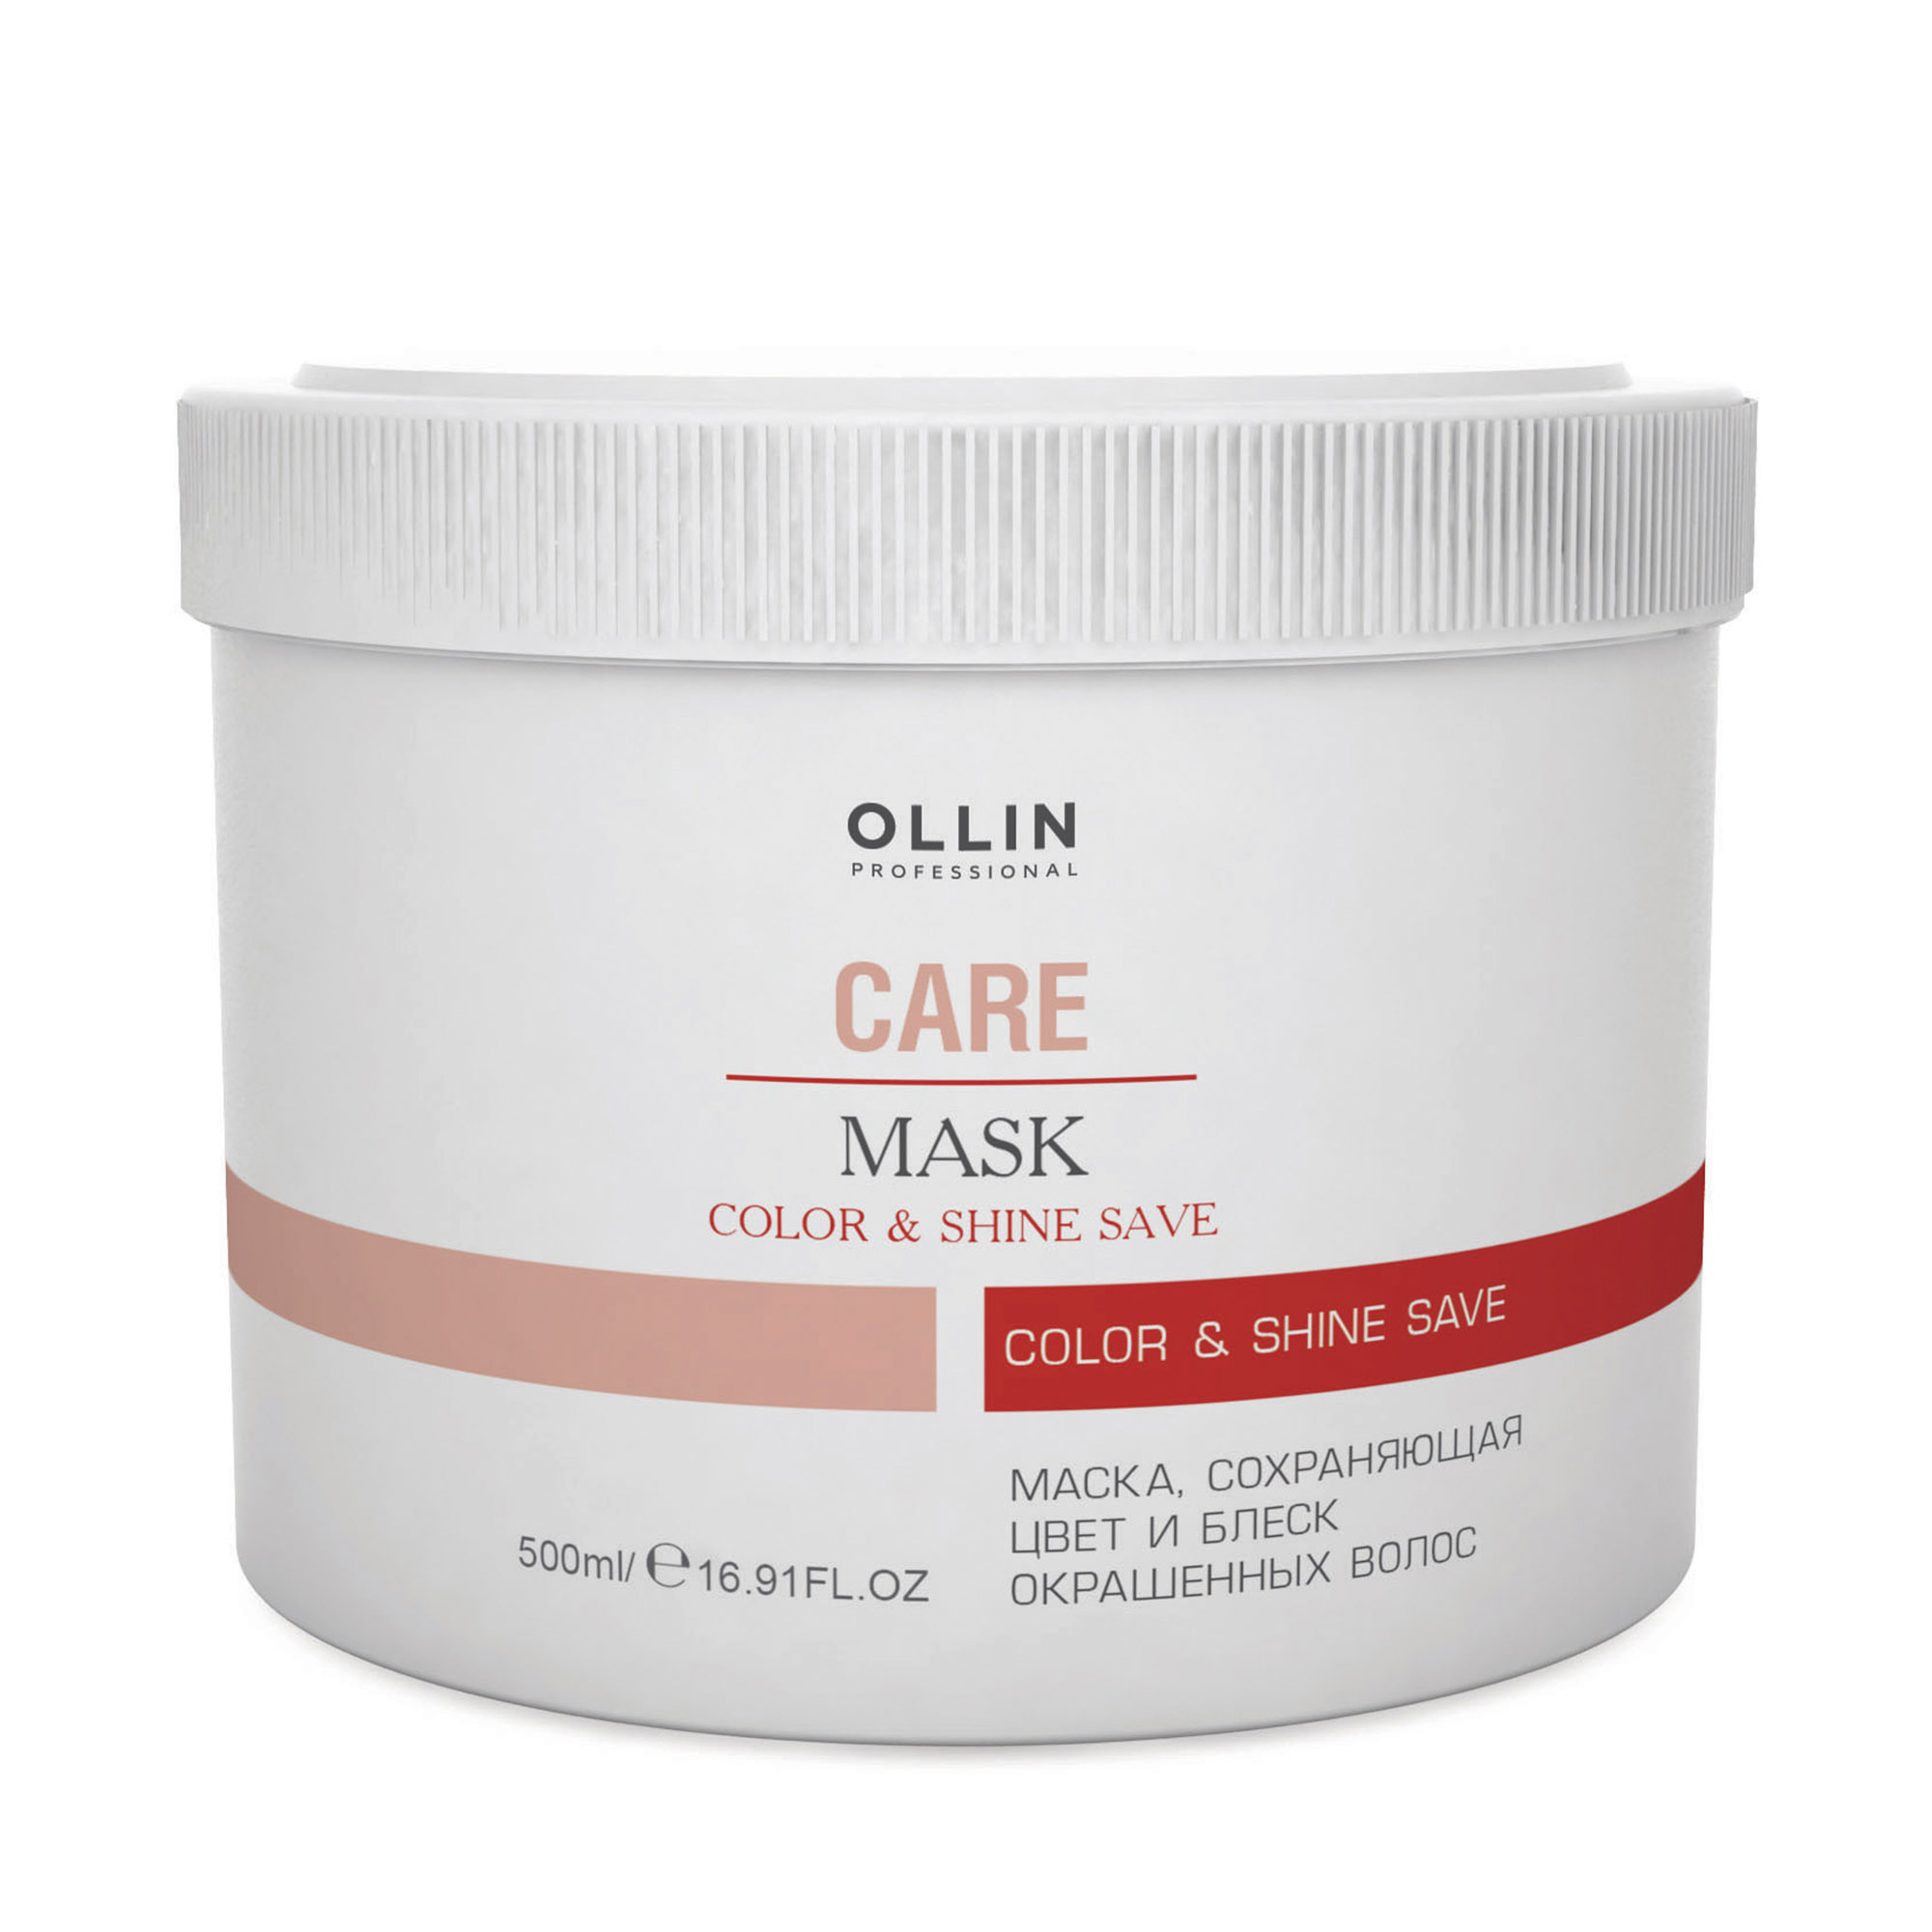 Маска Ollin Professional  Care Color and Shine Save сохраняющий цвет и блеск окрашенных волос 500 мл маска объем для густоты и восстановления волос 300 мл